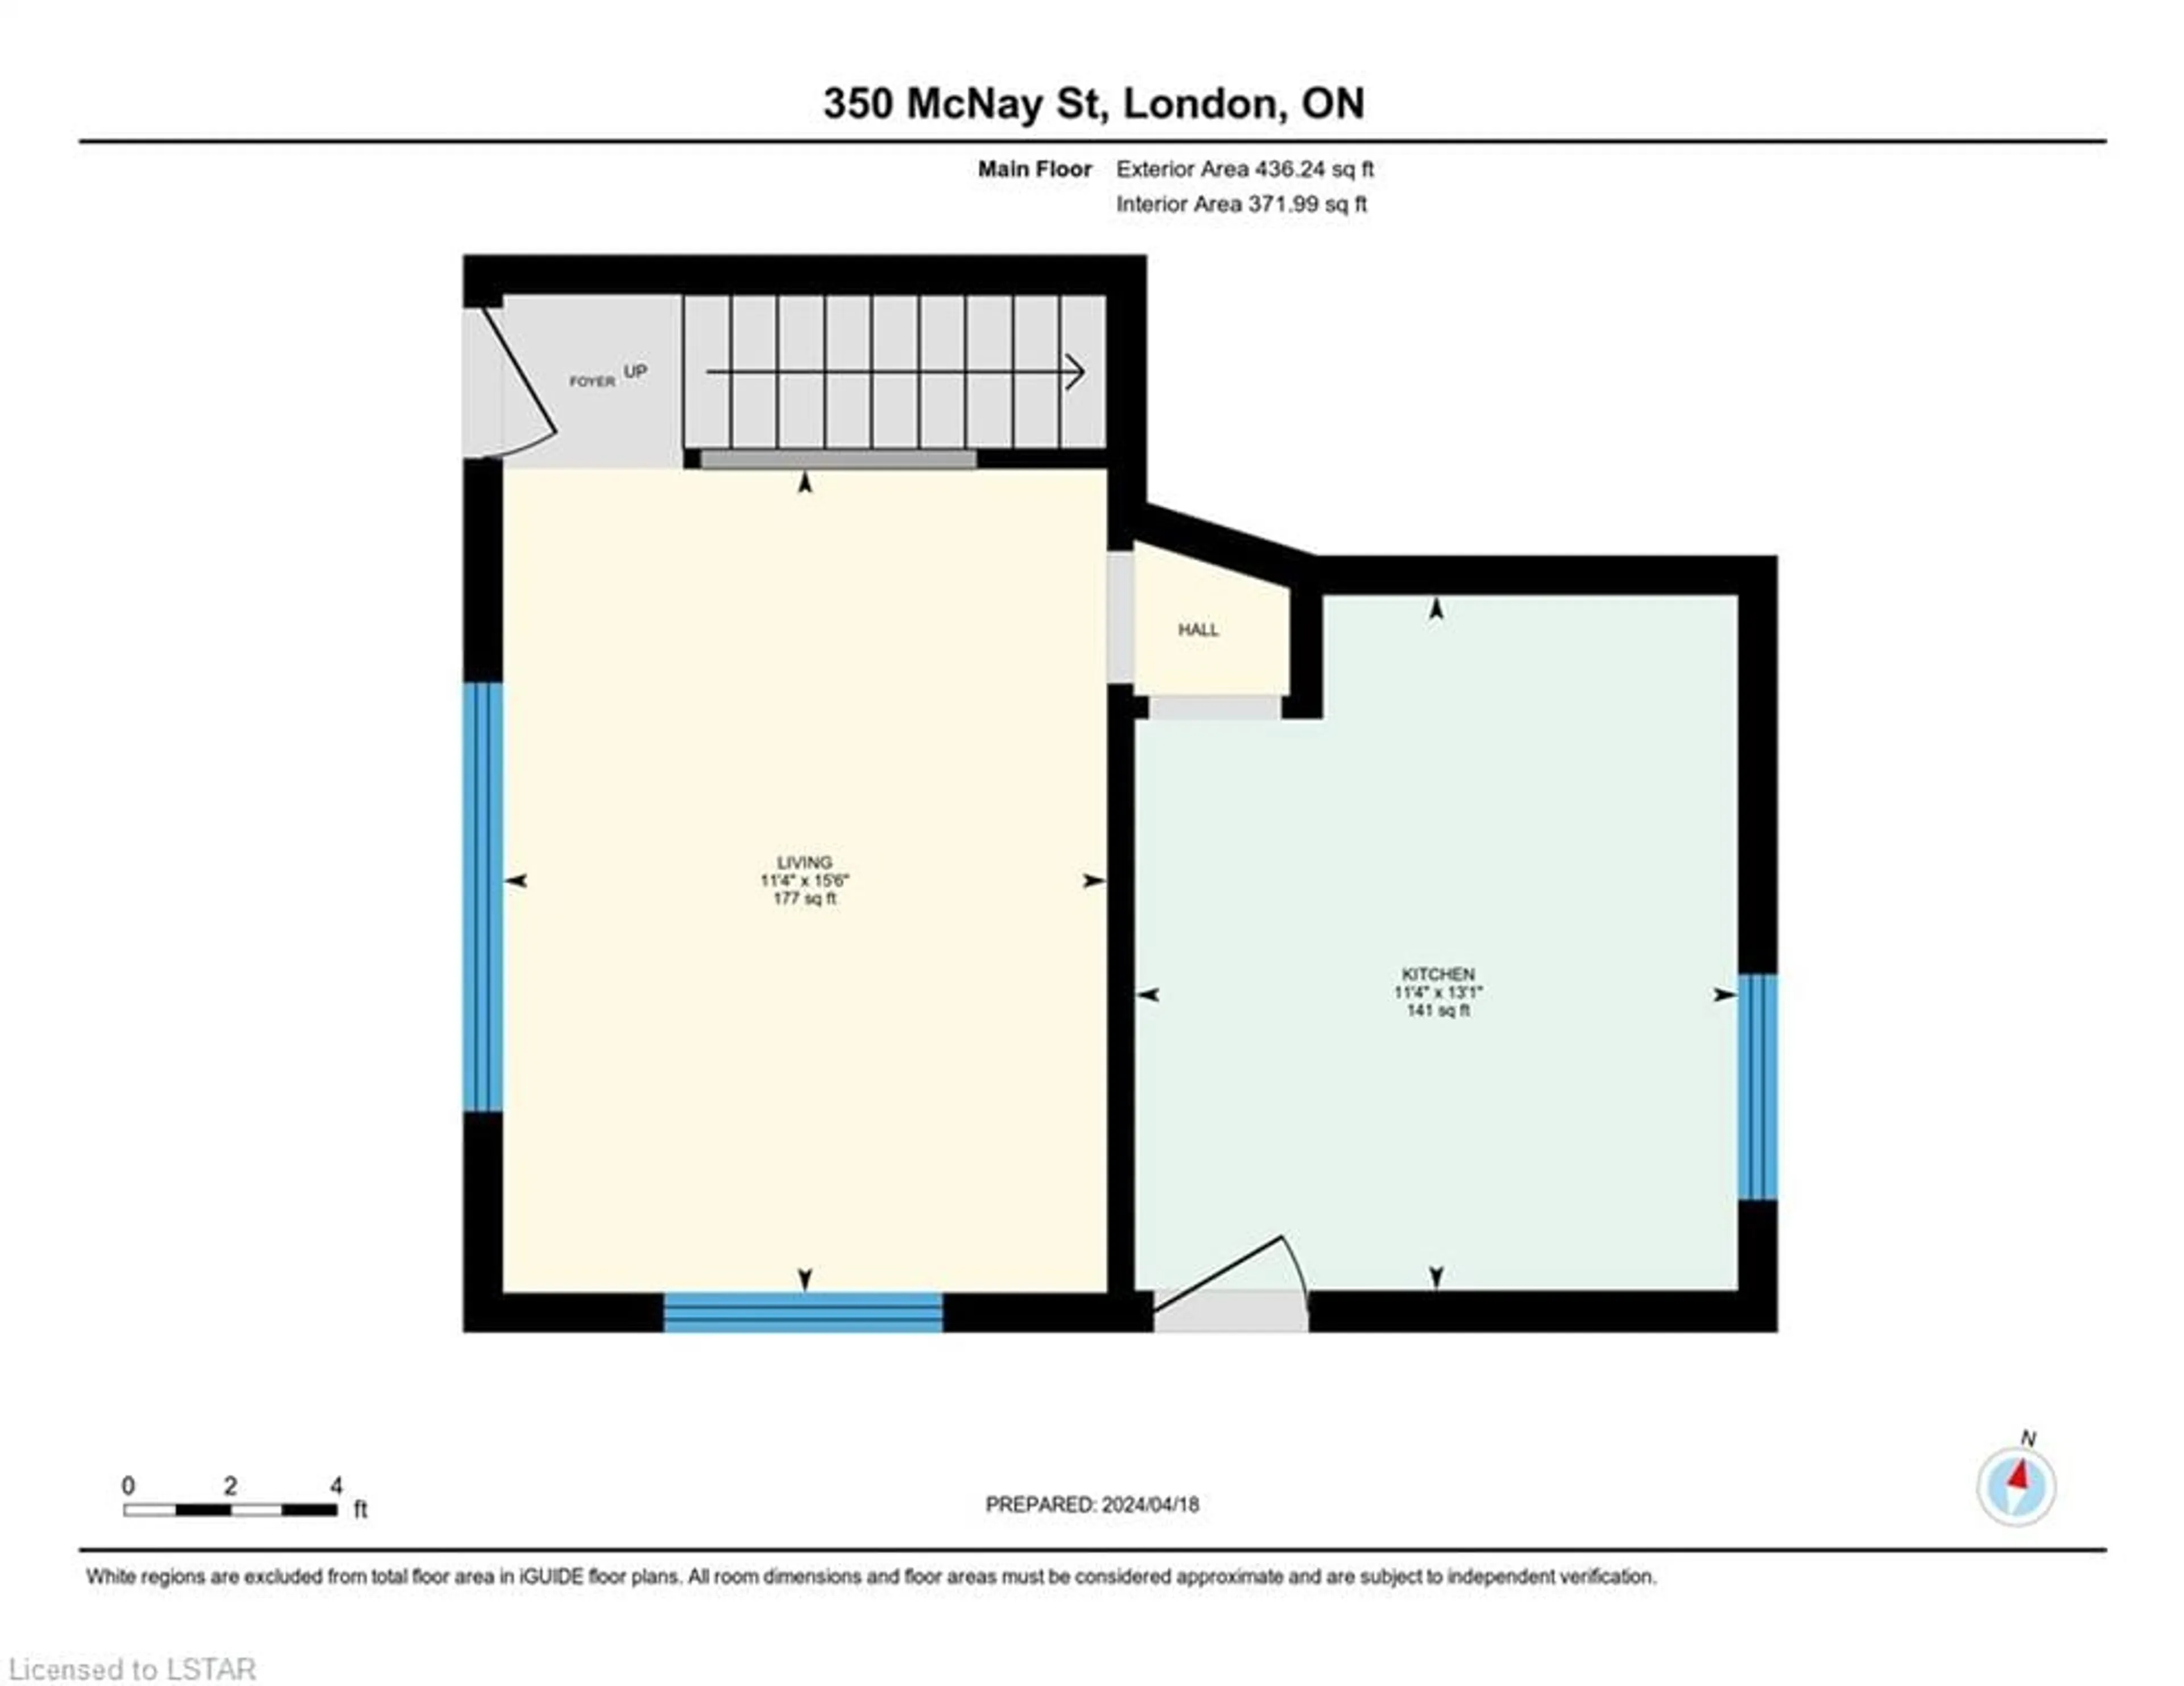 Floor plan for 350 Mcnay St, London Ontario N5Y 1M1